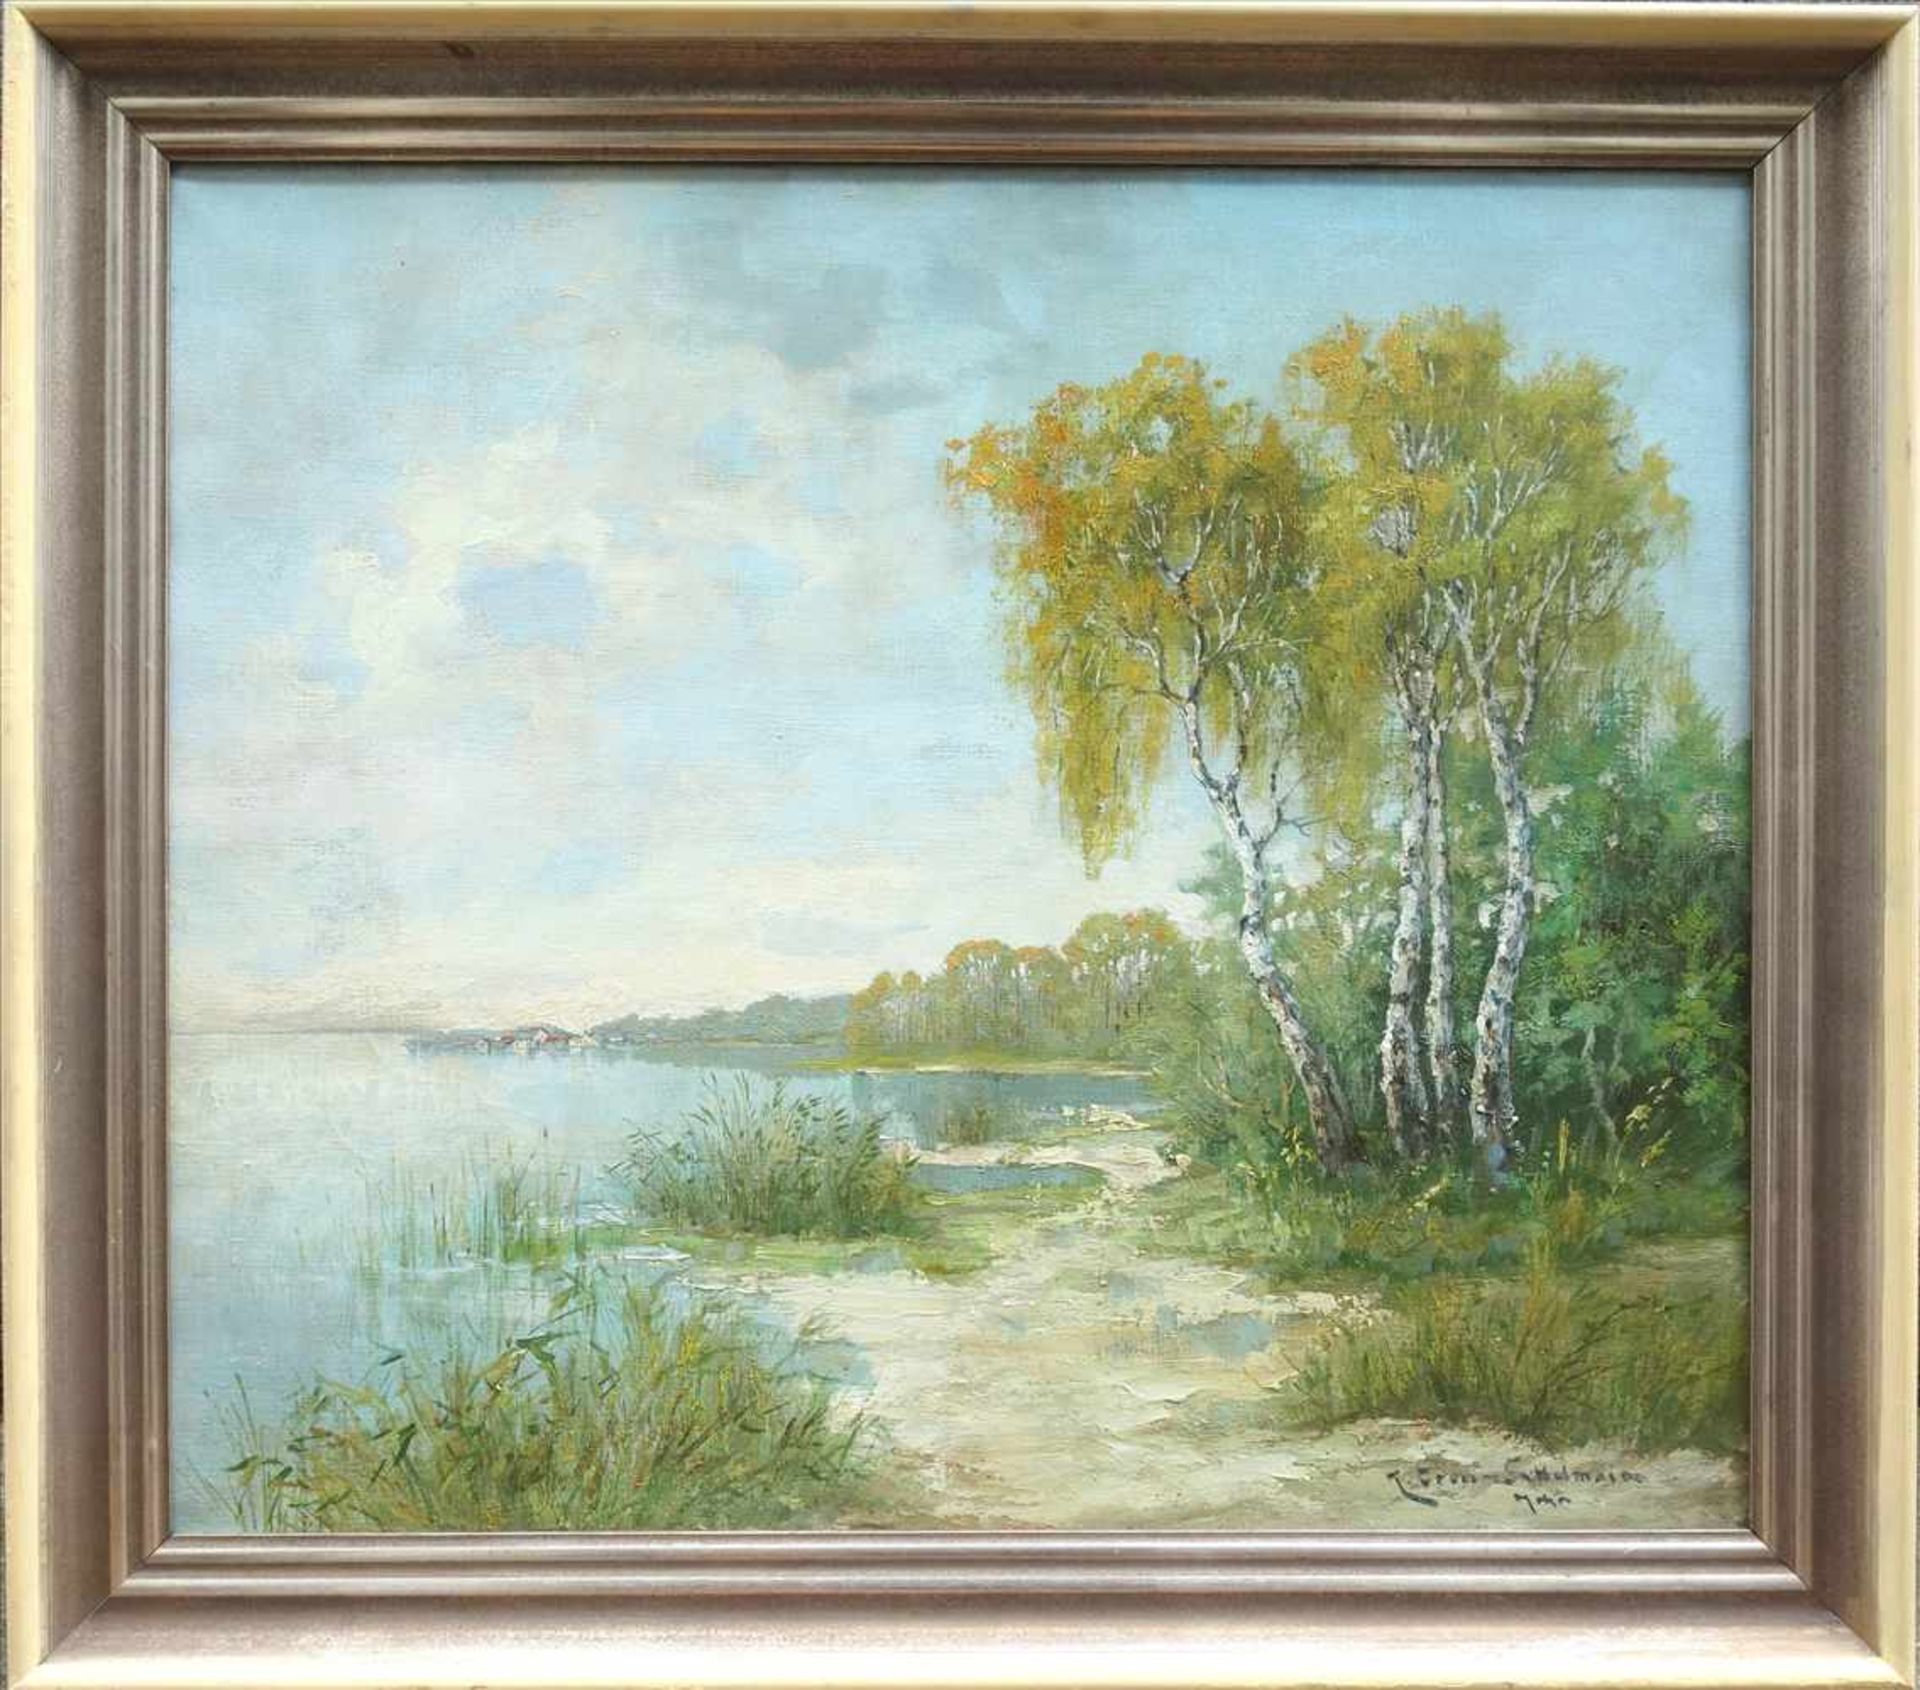 Karl Gross-Sattelmair "Birken am See", um 1900, Öl/Lwd., signiert, BH 70*60cm, Blick auf ein